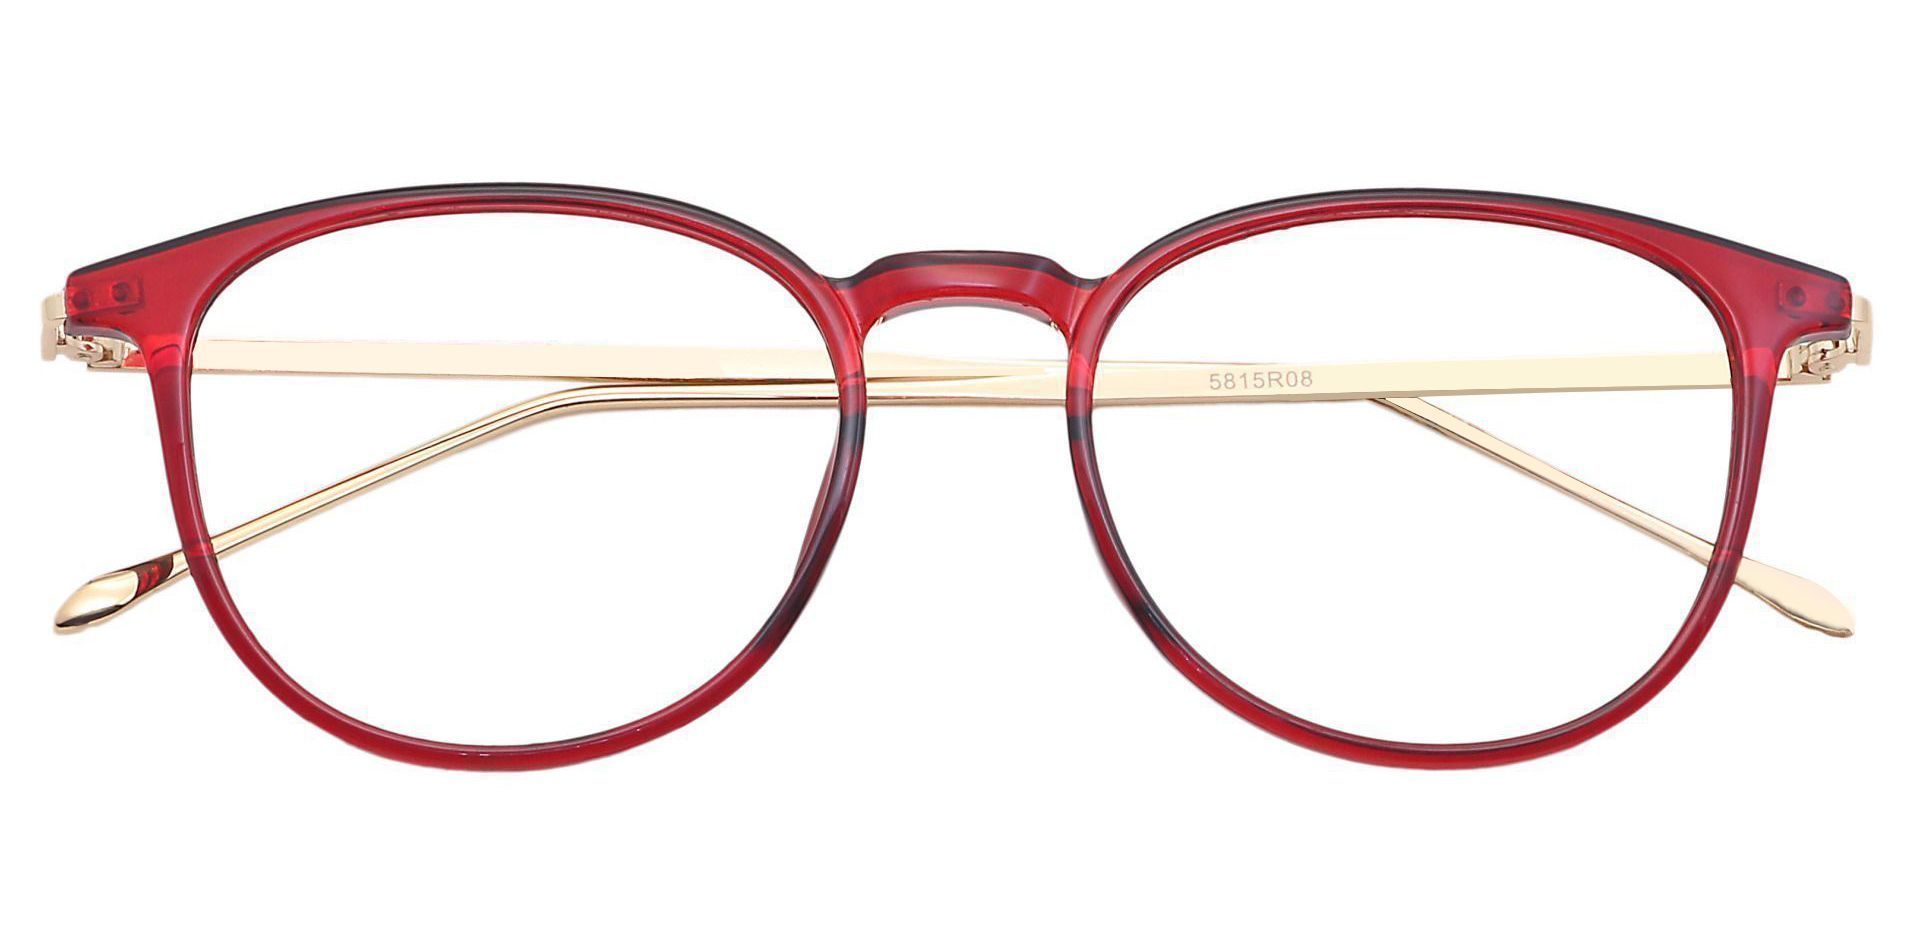 Elliott Round Progressive Glasses - Red